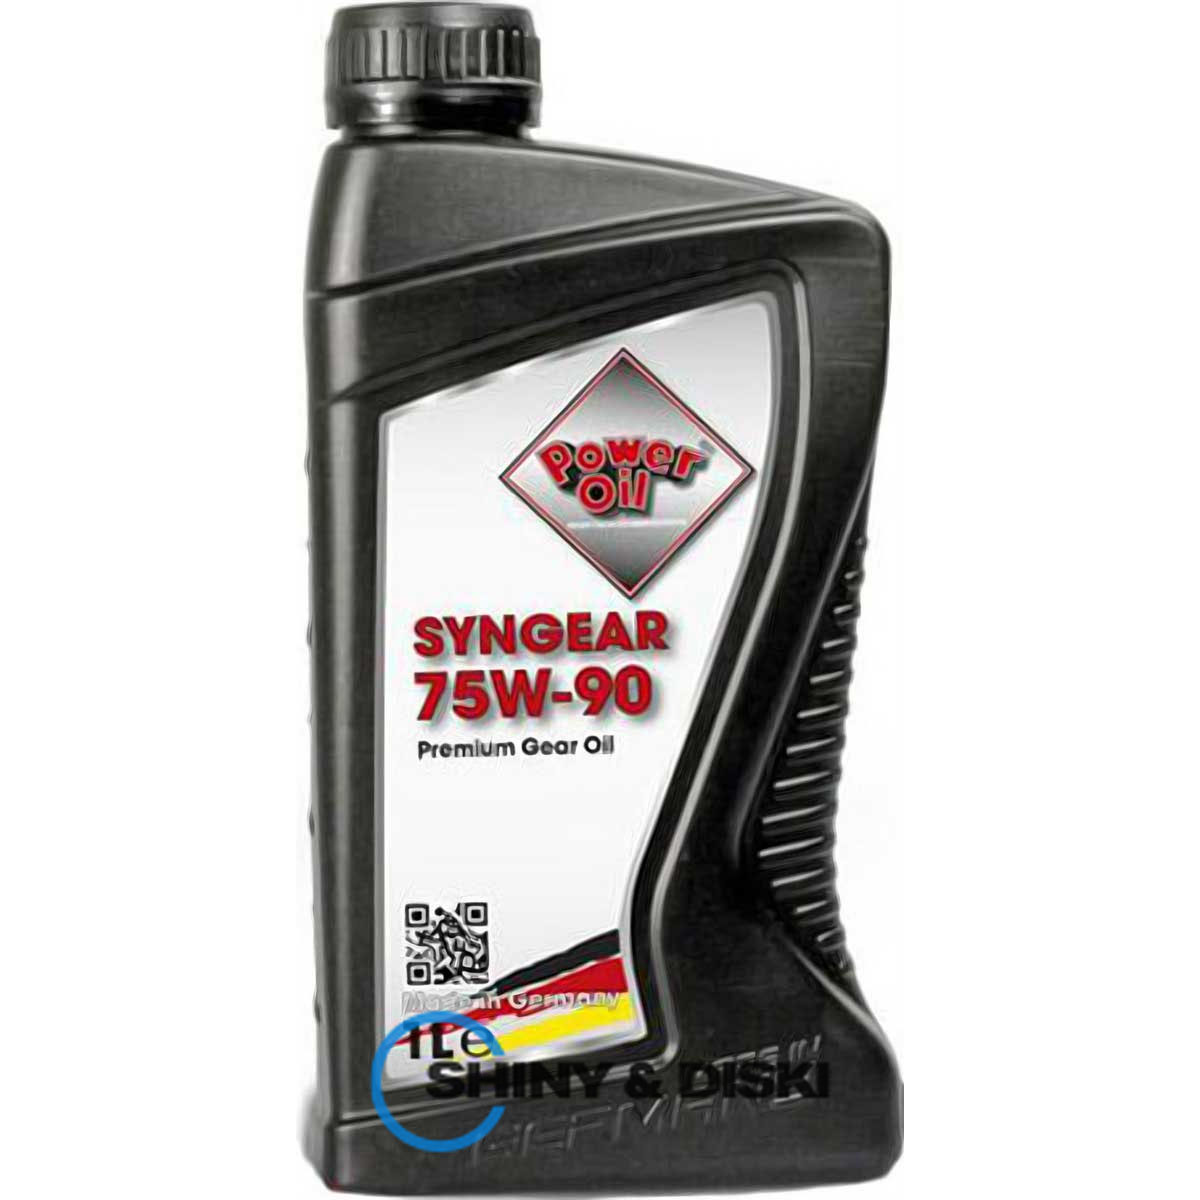 power oil syngear 75w-90 (1л)